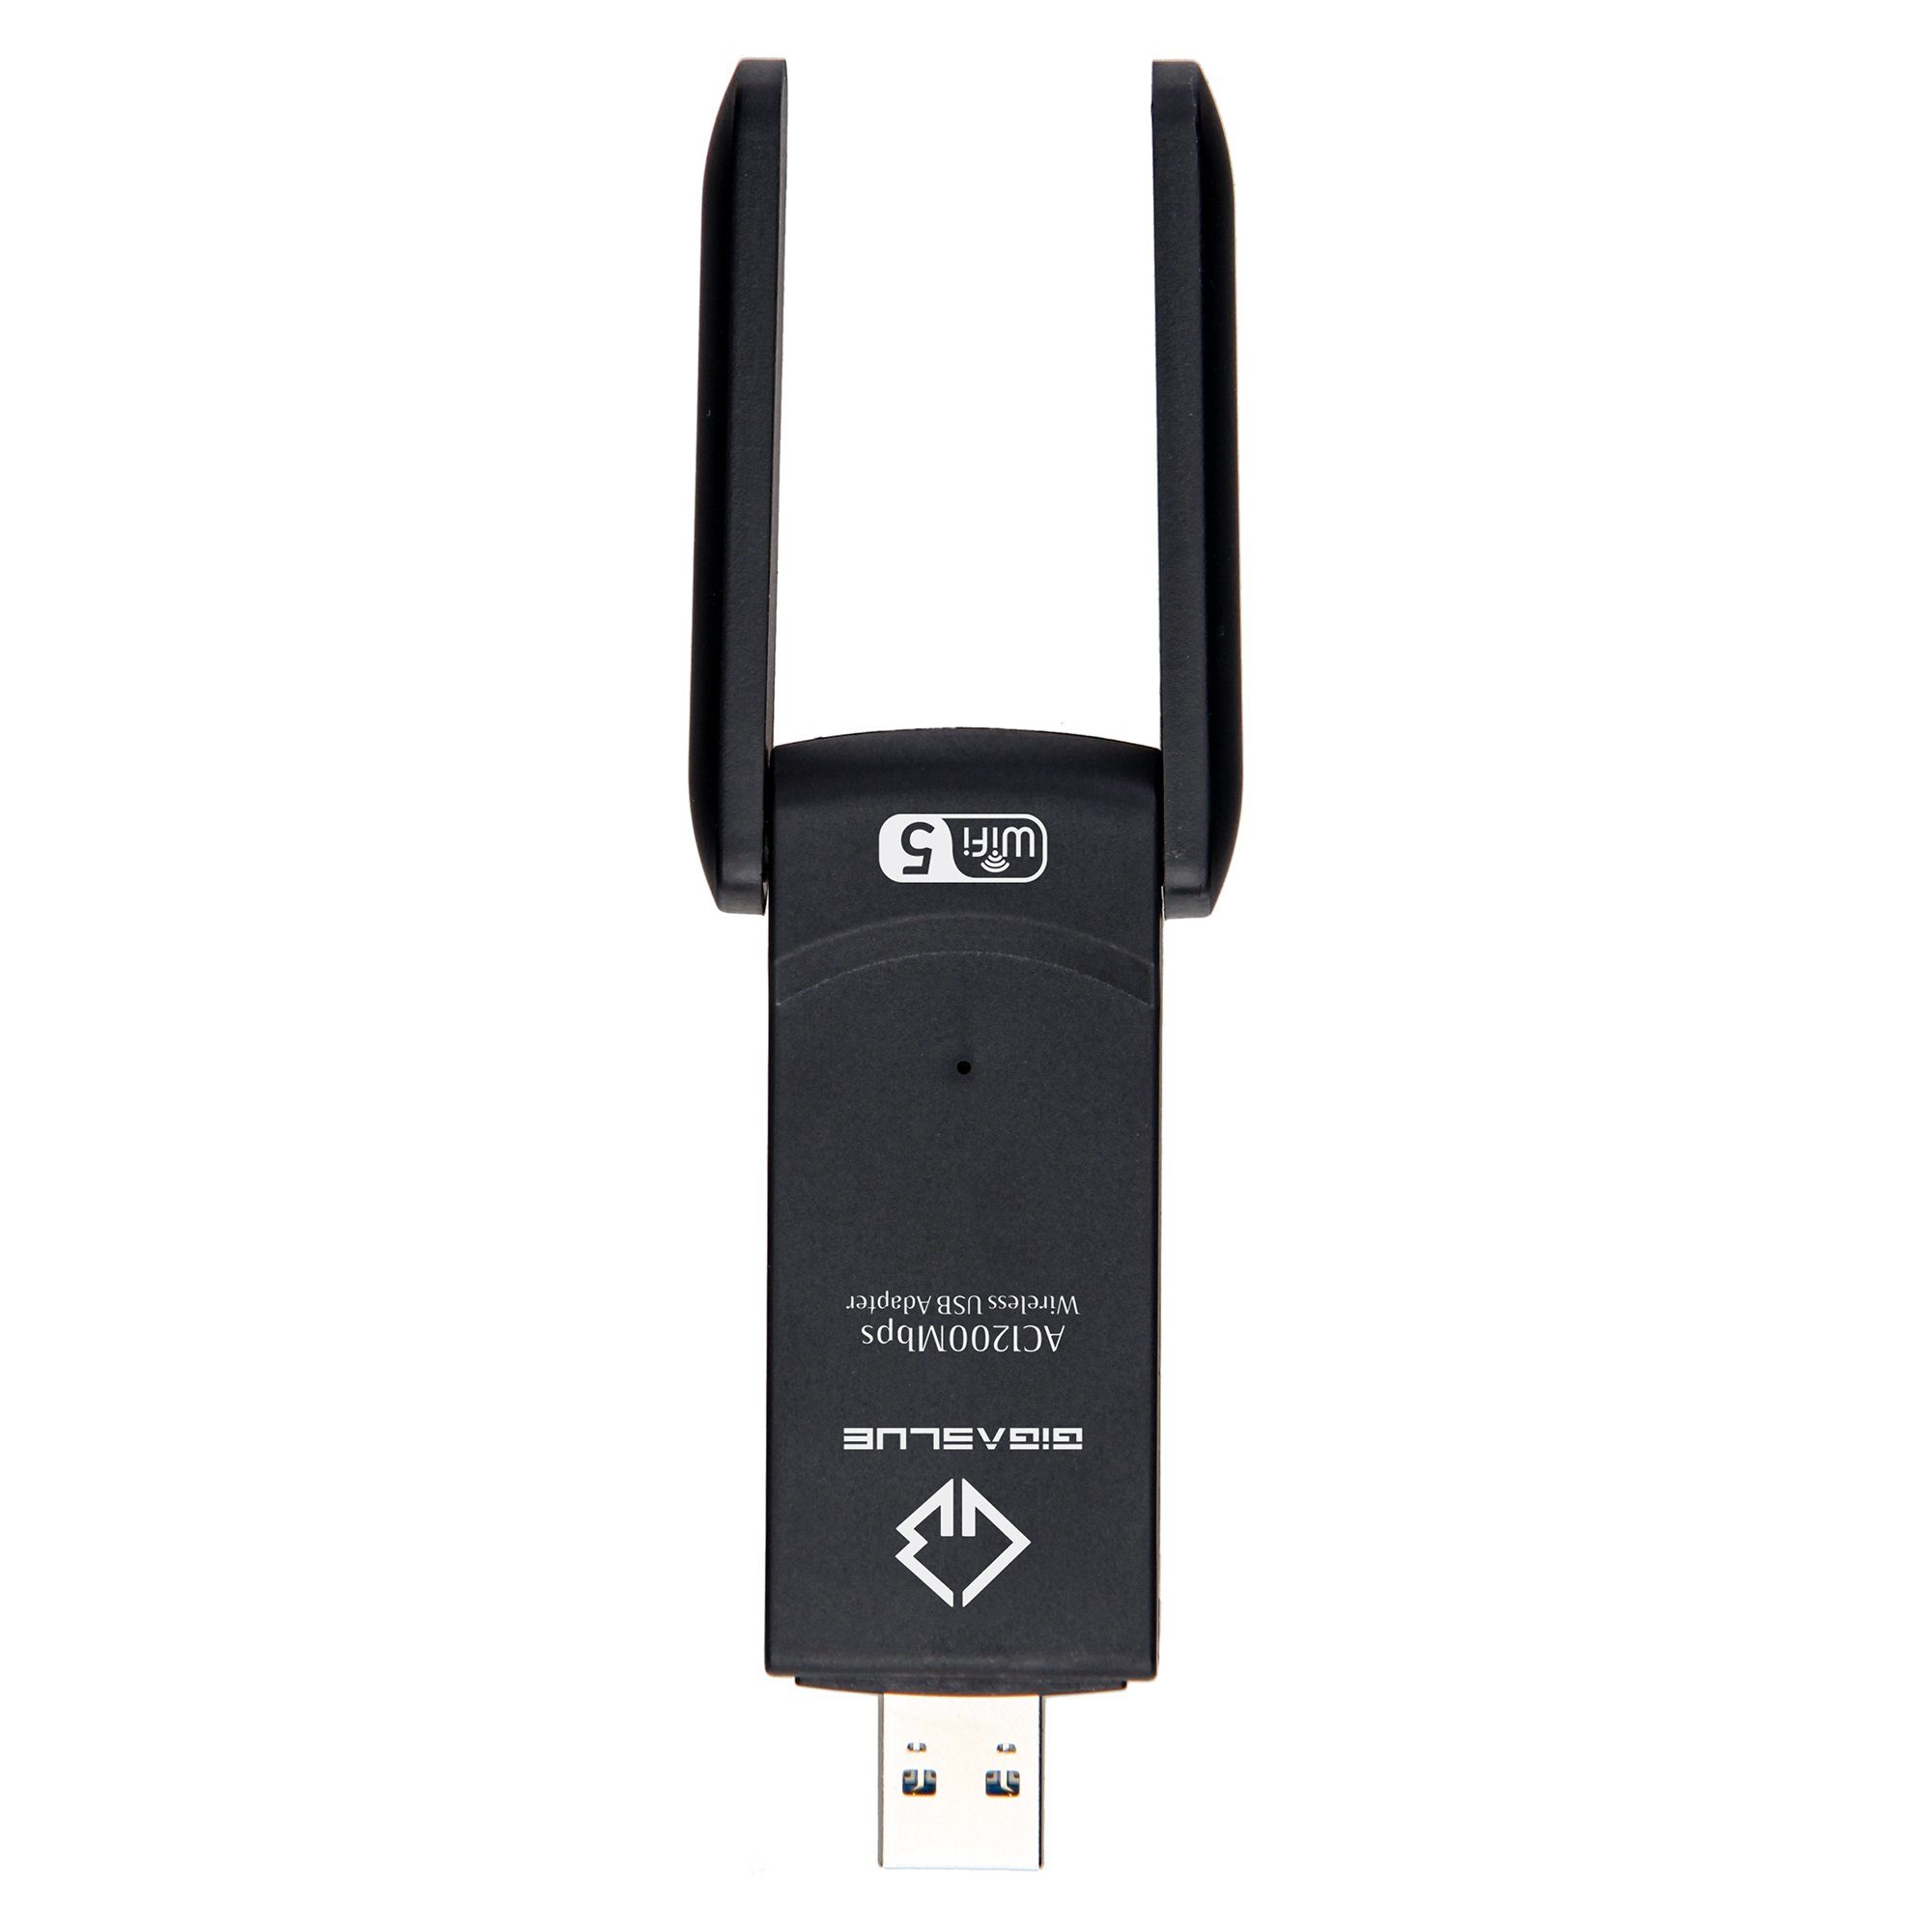 adapter Gigablue Kabel-Receiver 3.0 GigaBlue 1200Mbps USB WiFi